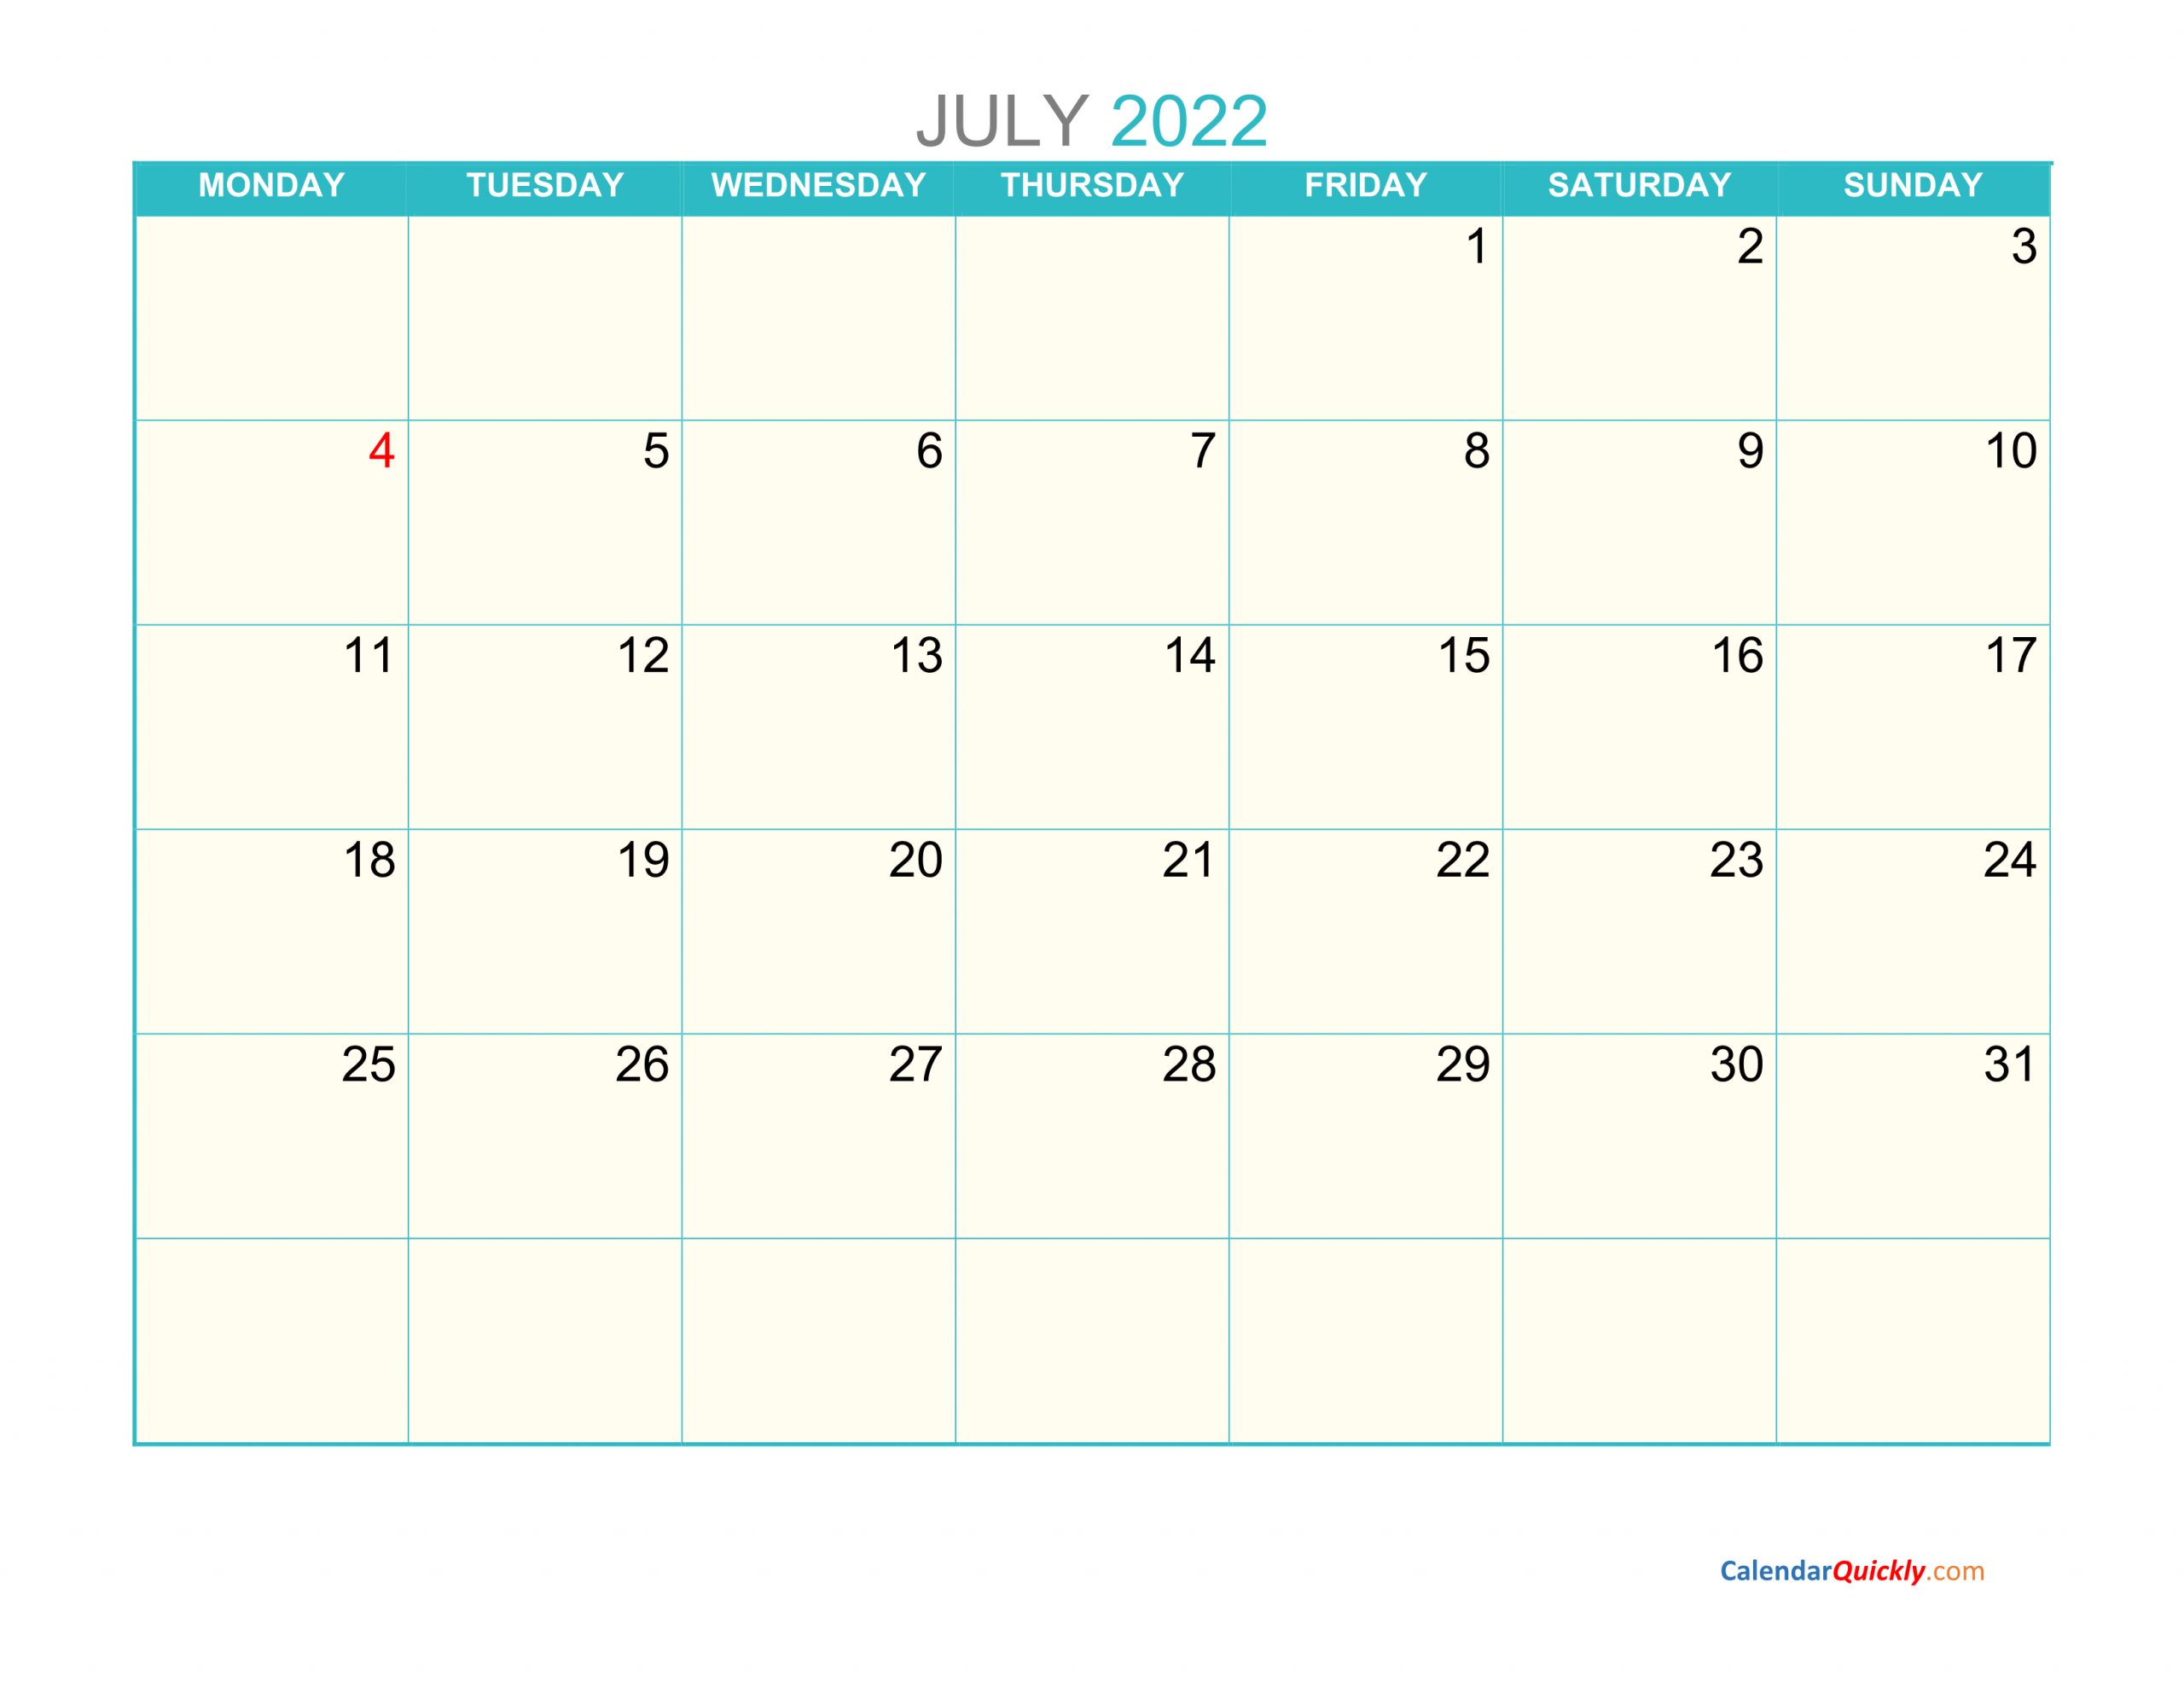 July Monday 2022 Calendar Printable | Calendar Quickly